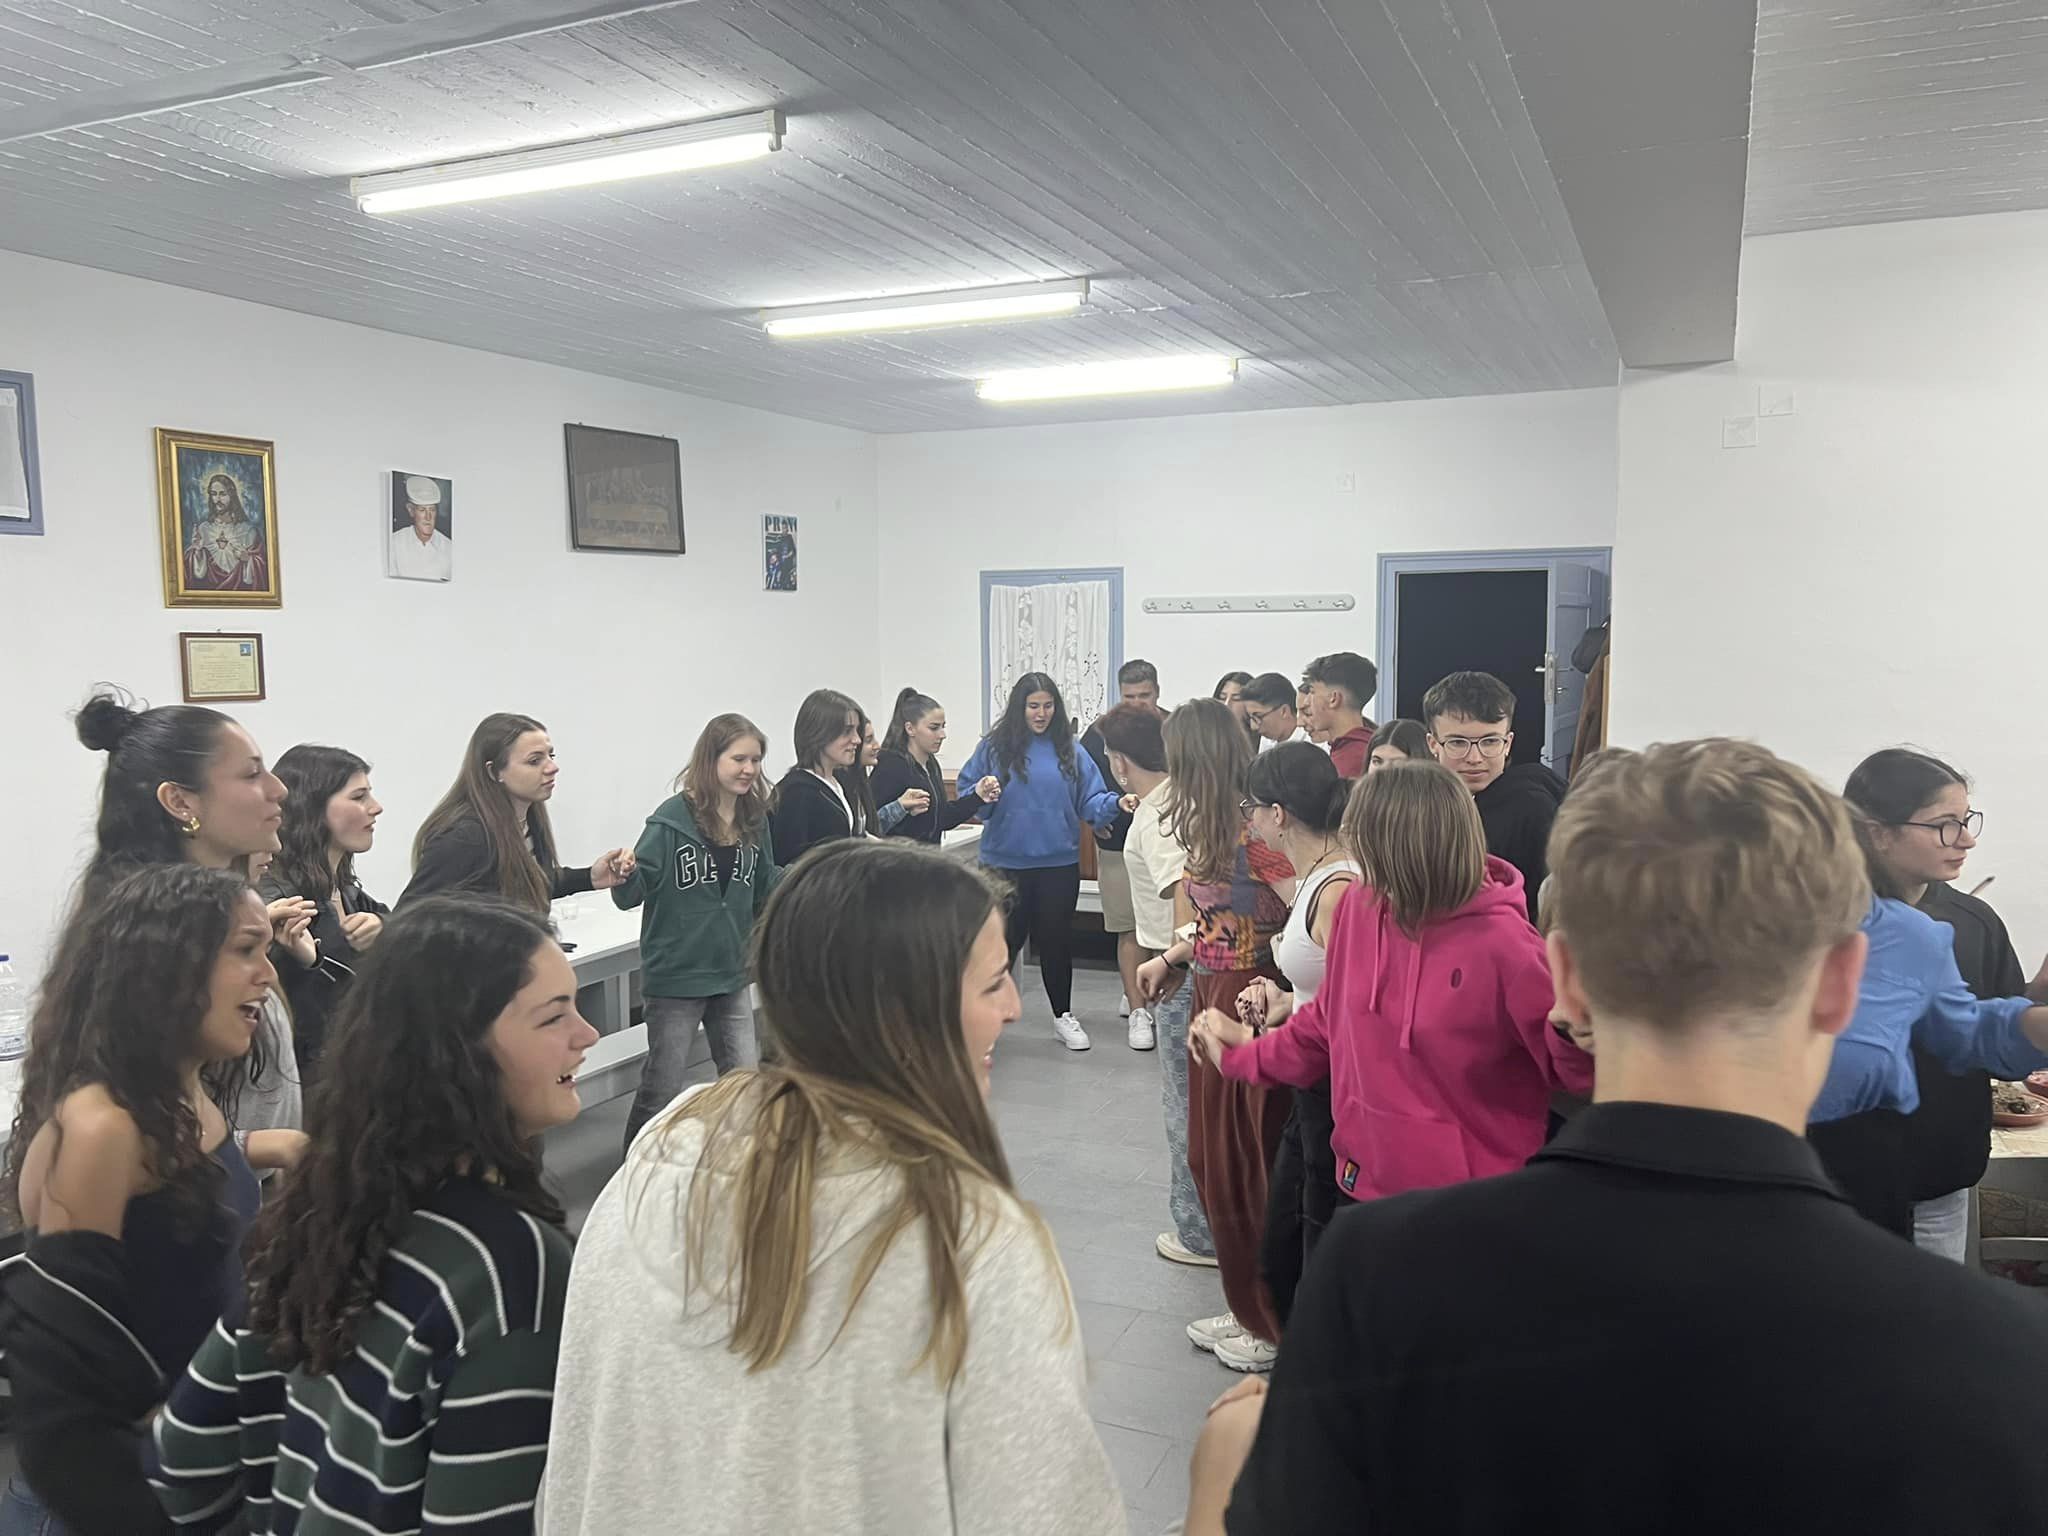 W dniach 14-21 kwietnia grupa 11 uczniów pod opieką p. Agnieszki Gemborys i p. Katarzyny Ścisłowicz spędziła wspaniałe chwile w Grecji na pięknej wyspie Sifnos. Wyjazd odbył się w ramach projektu Erasmus+ „Troskliwa Szkoła - Zjednoczeni w Różnorodności,”, integracja młodziezy